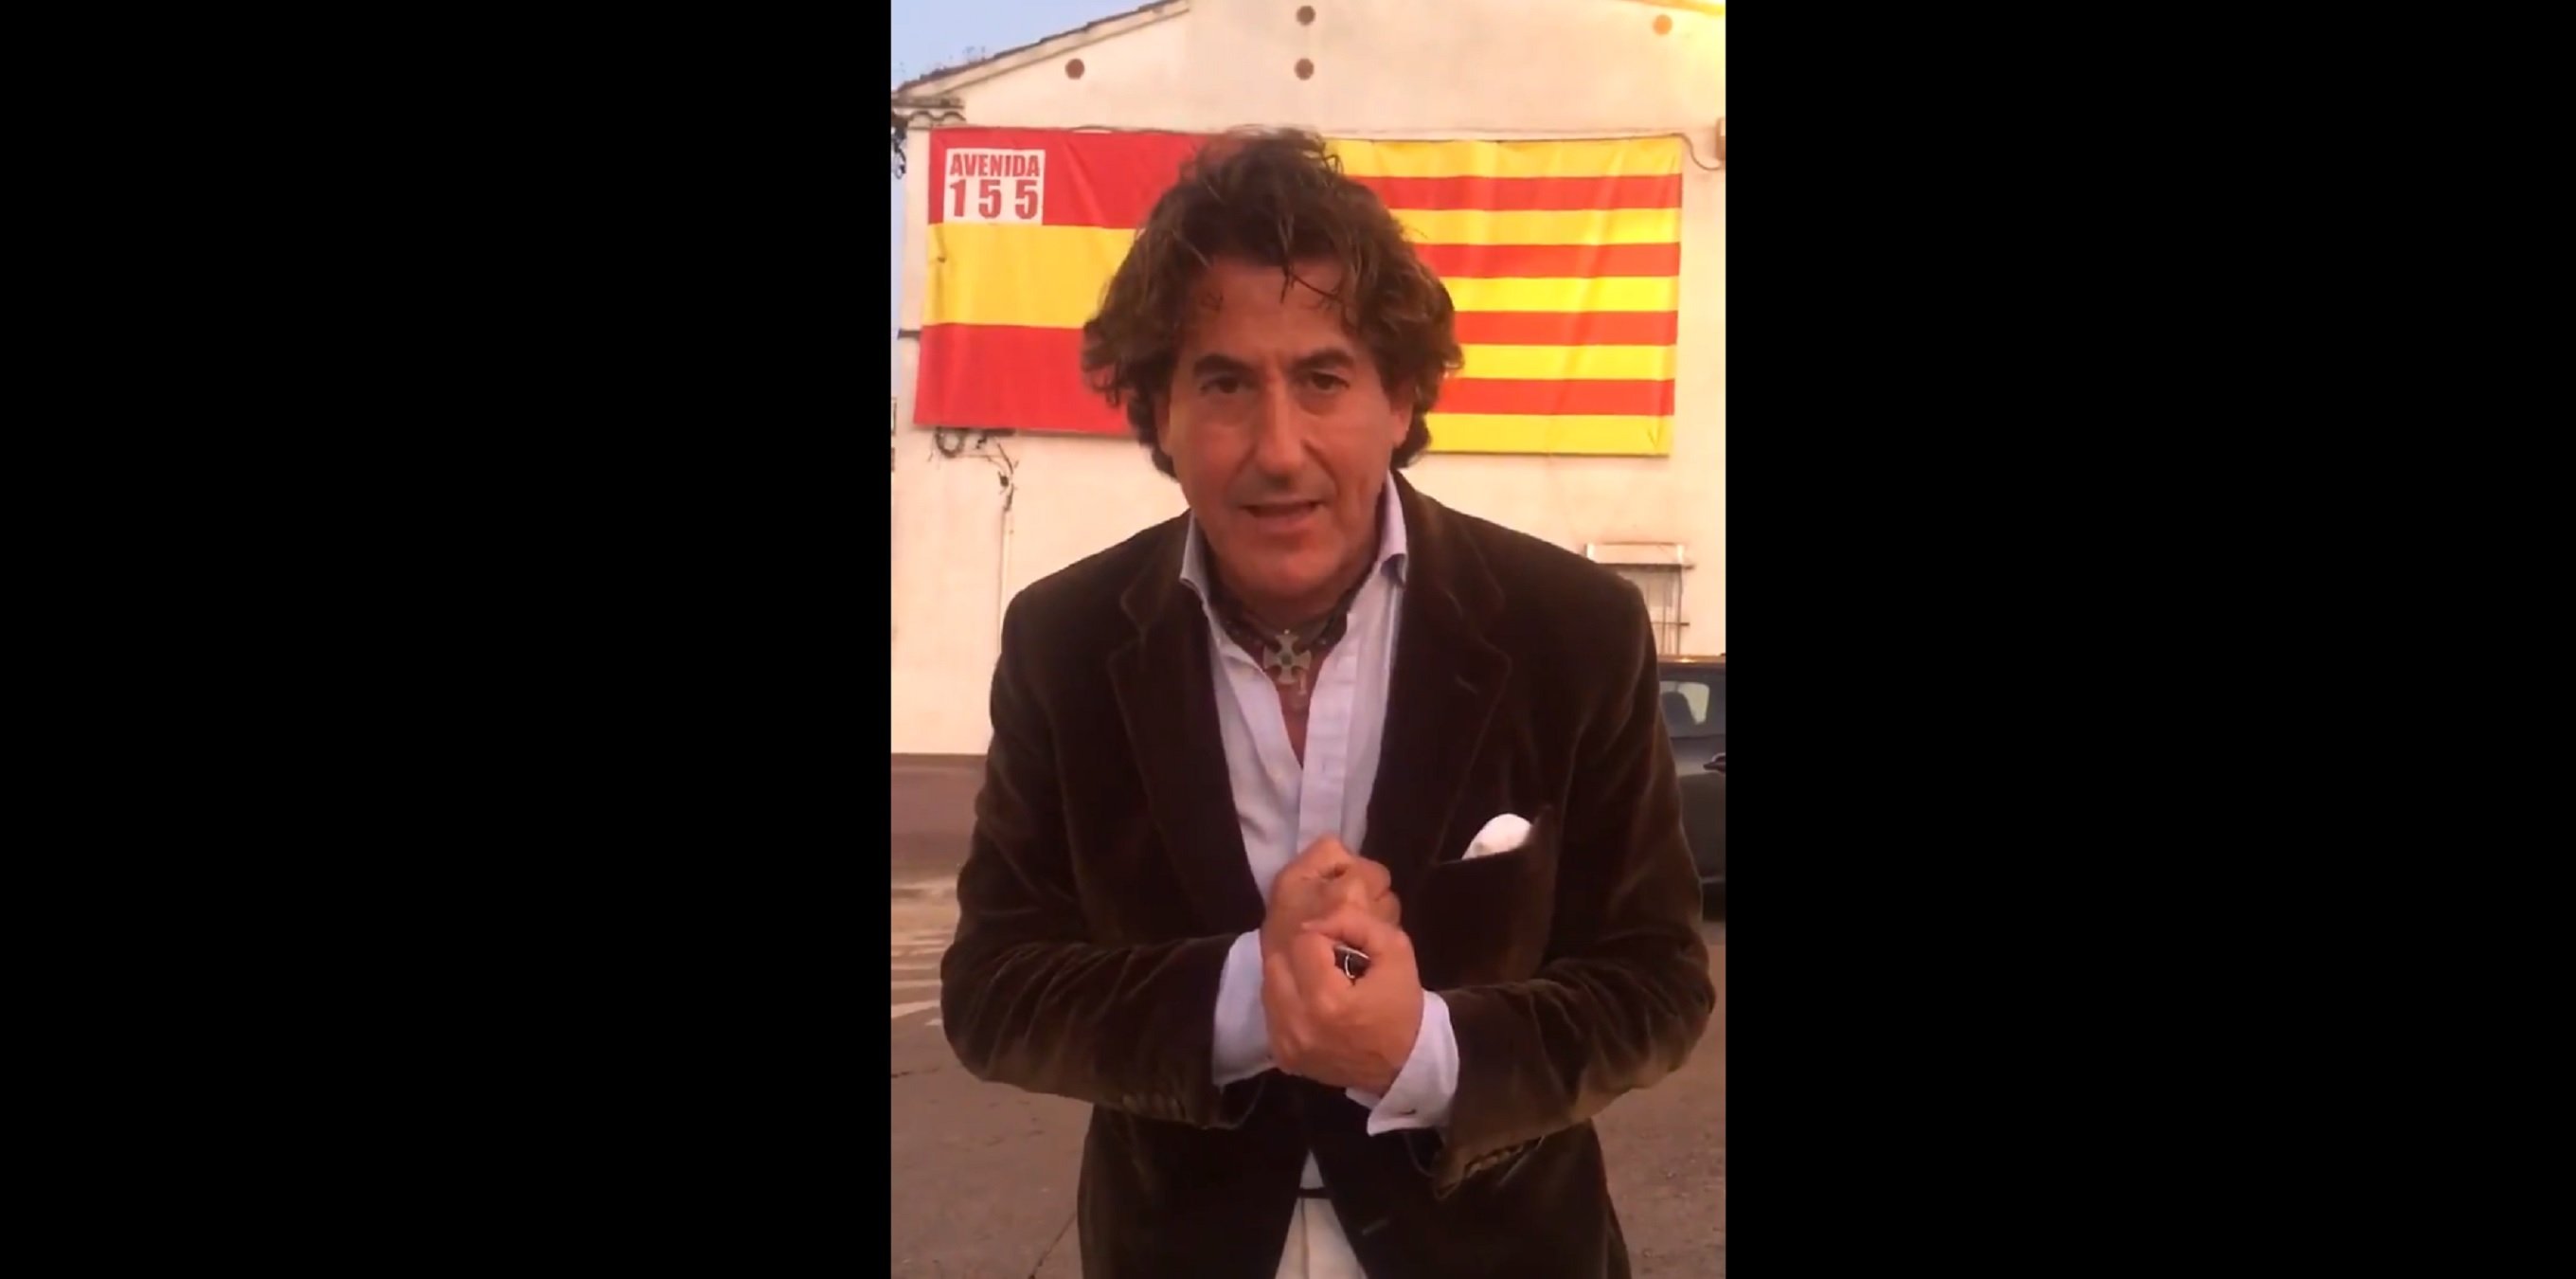 Marichalar sobre els seus aldarulls a Girona: "A esa gentucilla los perdono"